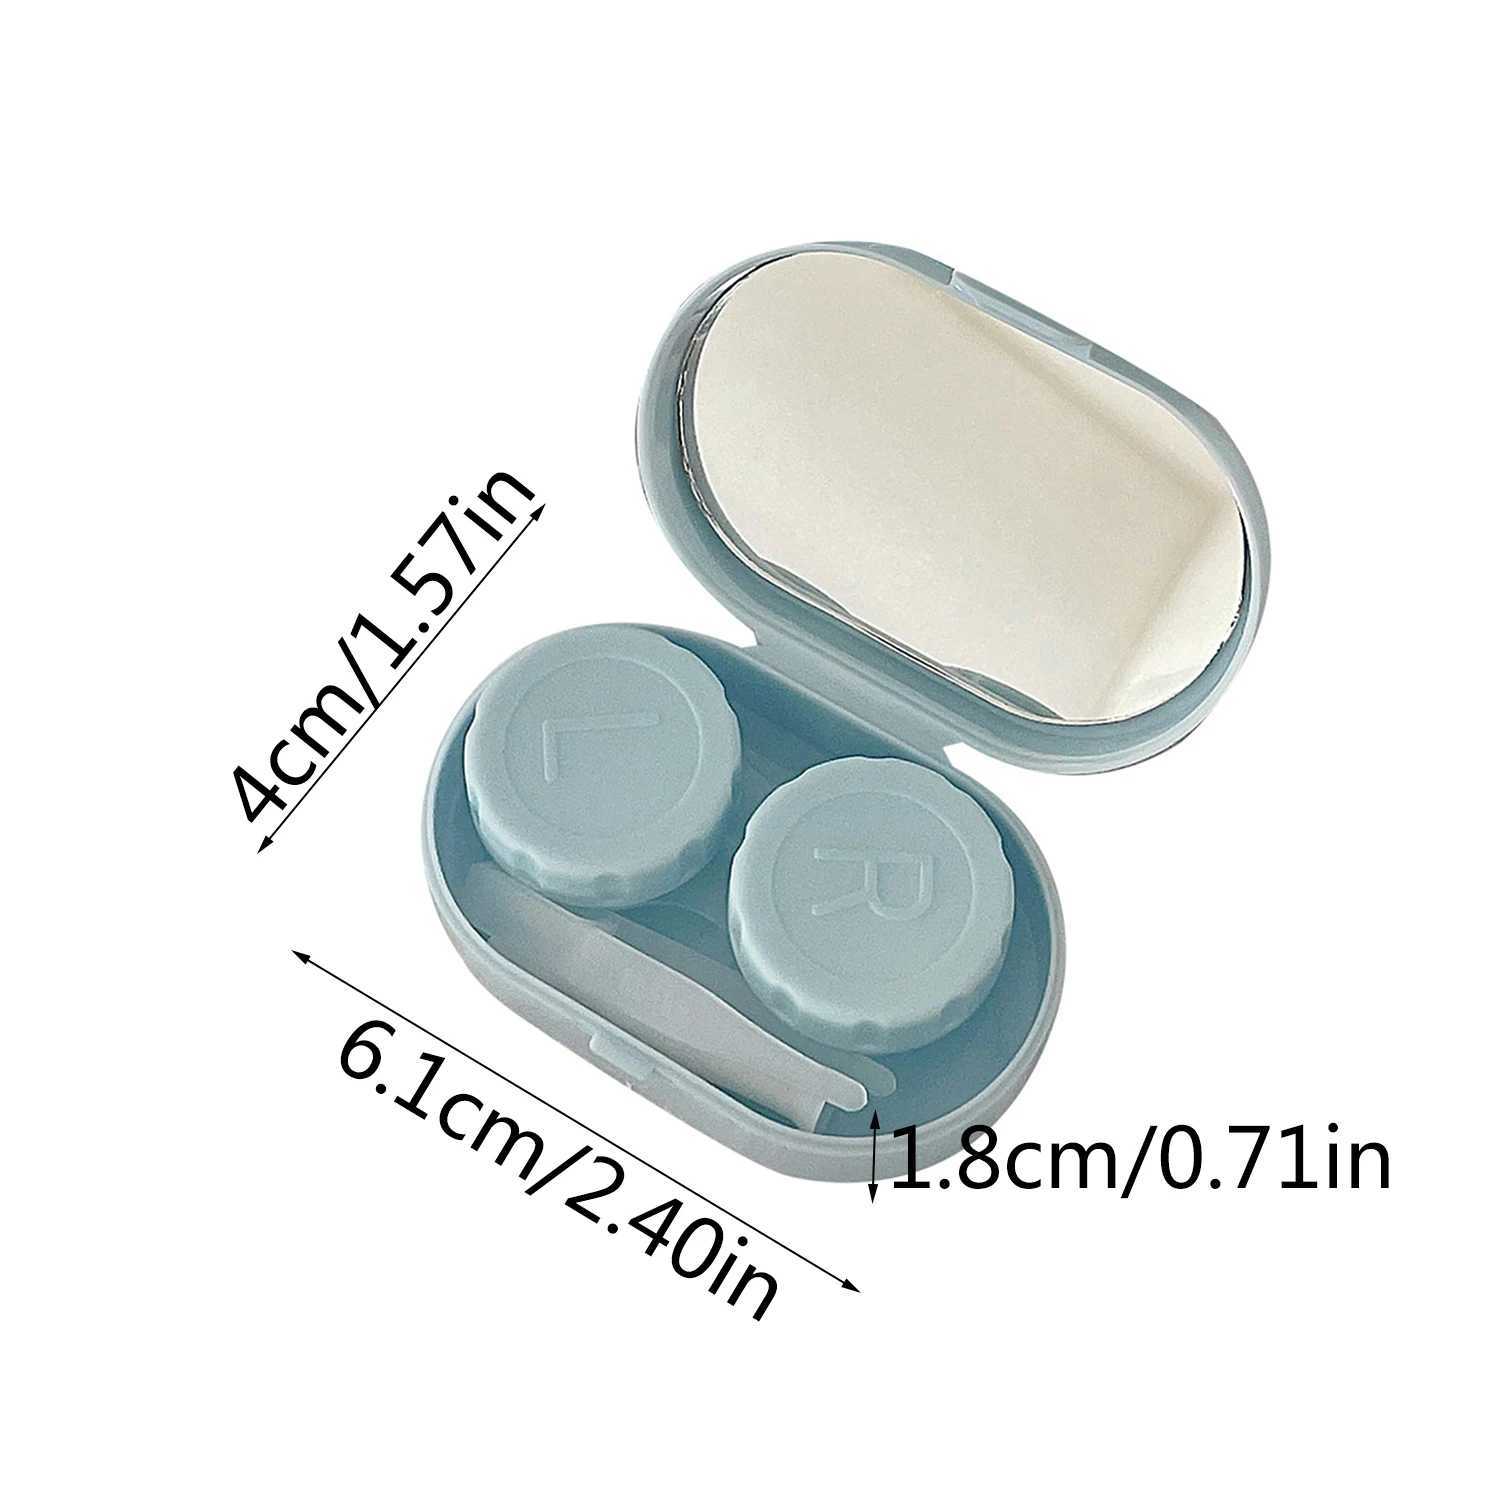 Kontaktlinienzubehör Einfache Taschenmini -Kontaktlinsen -Koffer -Reise Kit Easy Carry Linsen Box Student Portable Travel Accessoires D240426